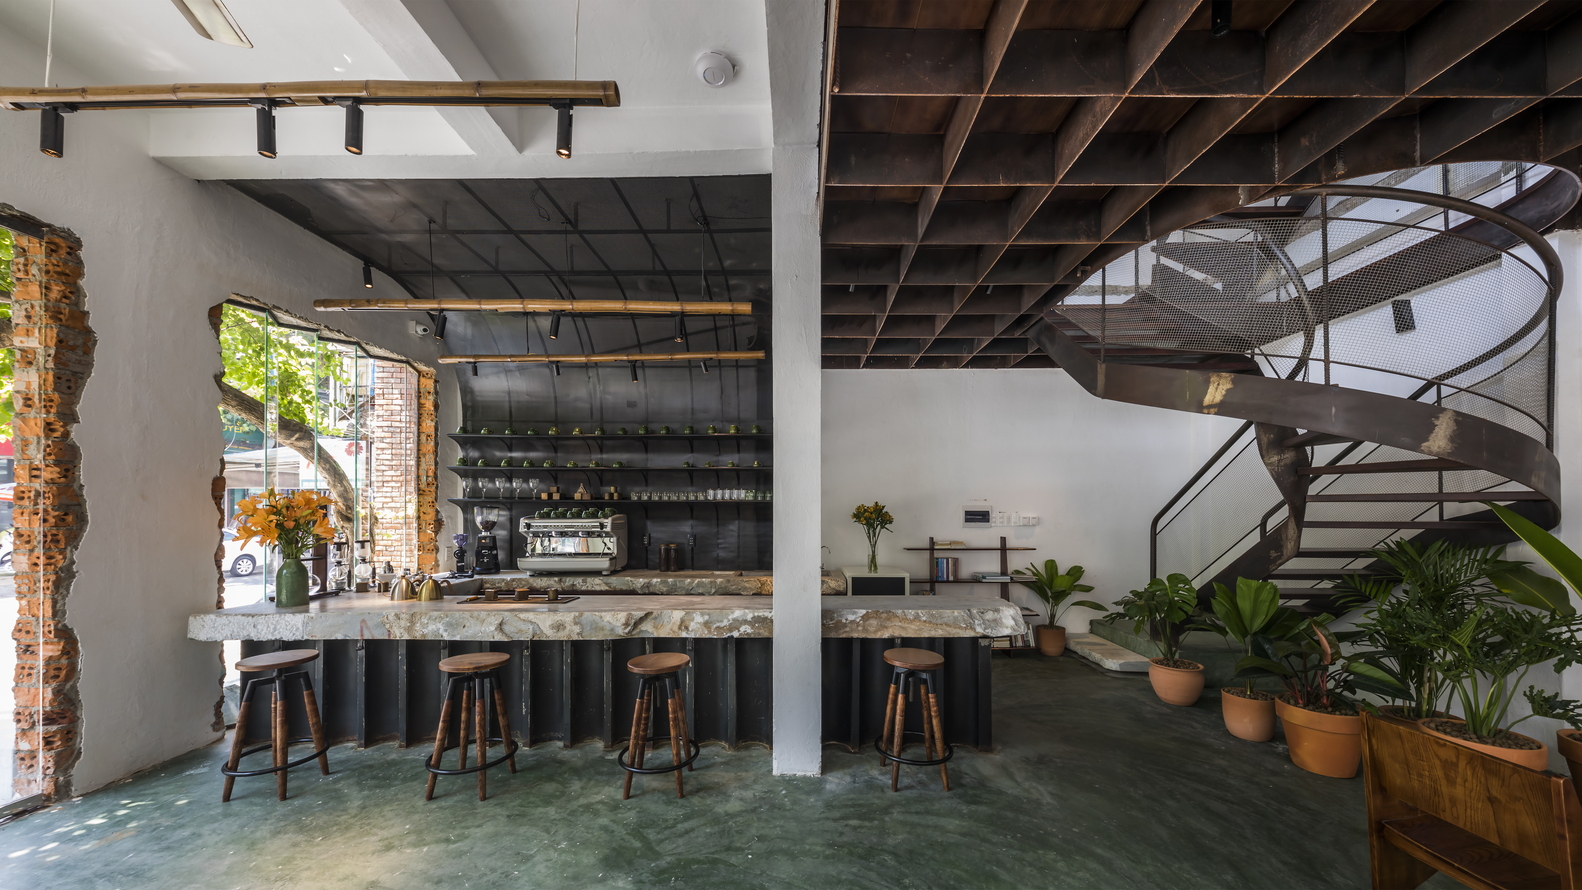 hình ảnh khu vực quầy bar trong quán cà phê với sàn bê tông màu xanh ngọc, ghế bar, kệ gắn tường